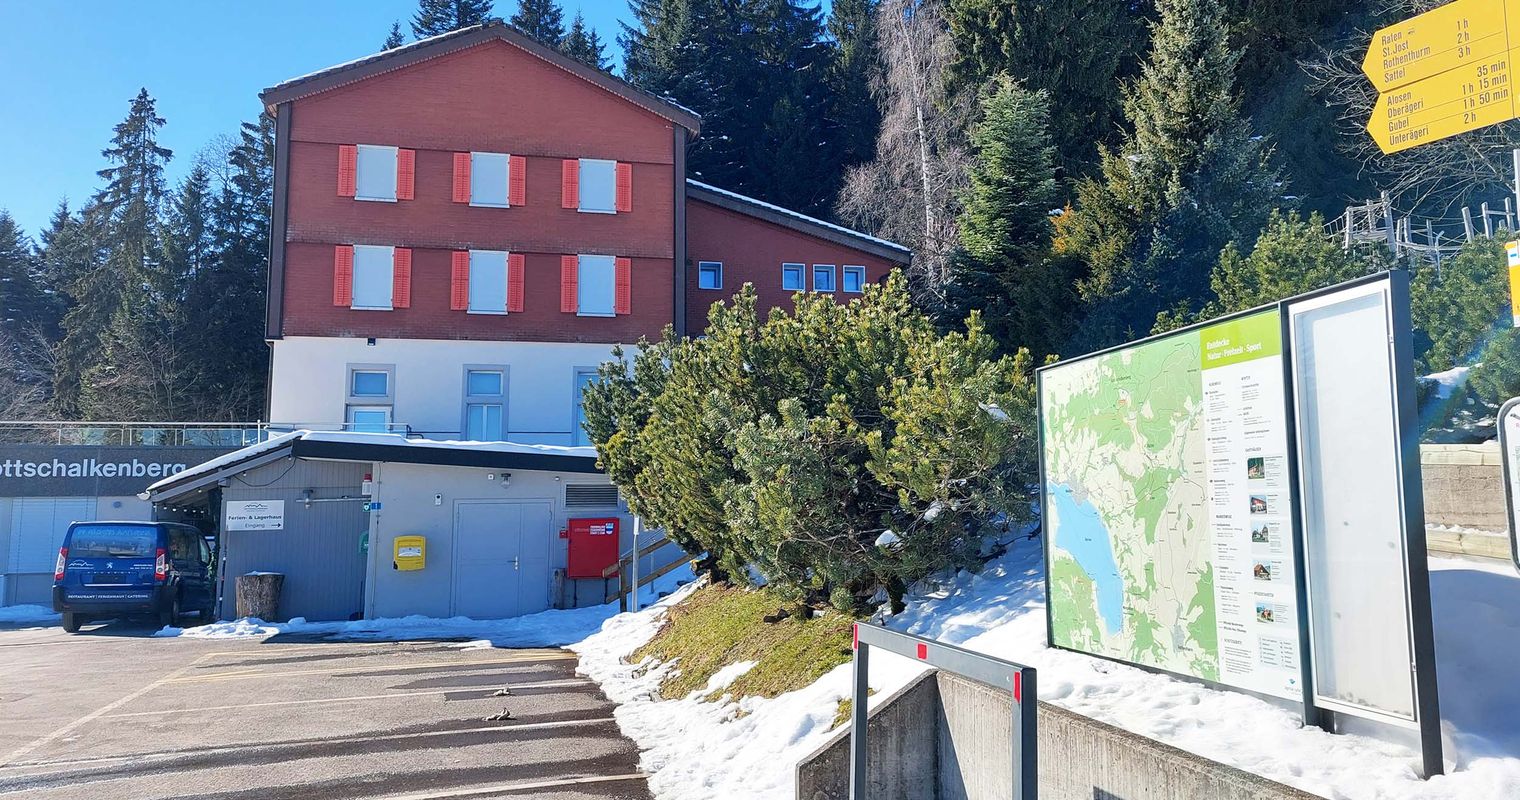 Für 12 Wochen: Strassensperre am Gottschalkenberg